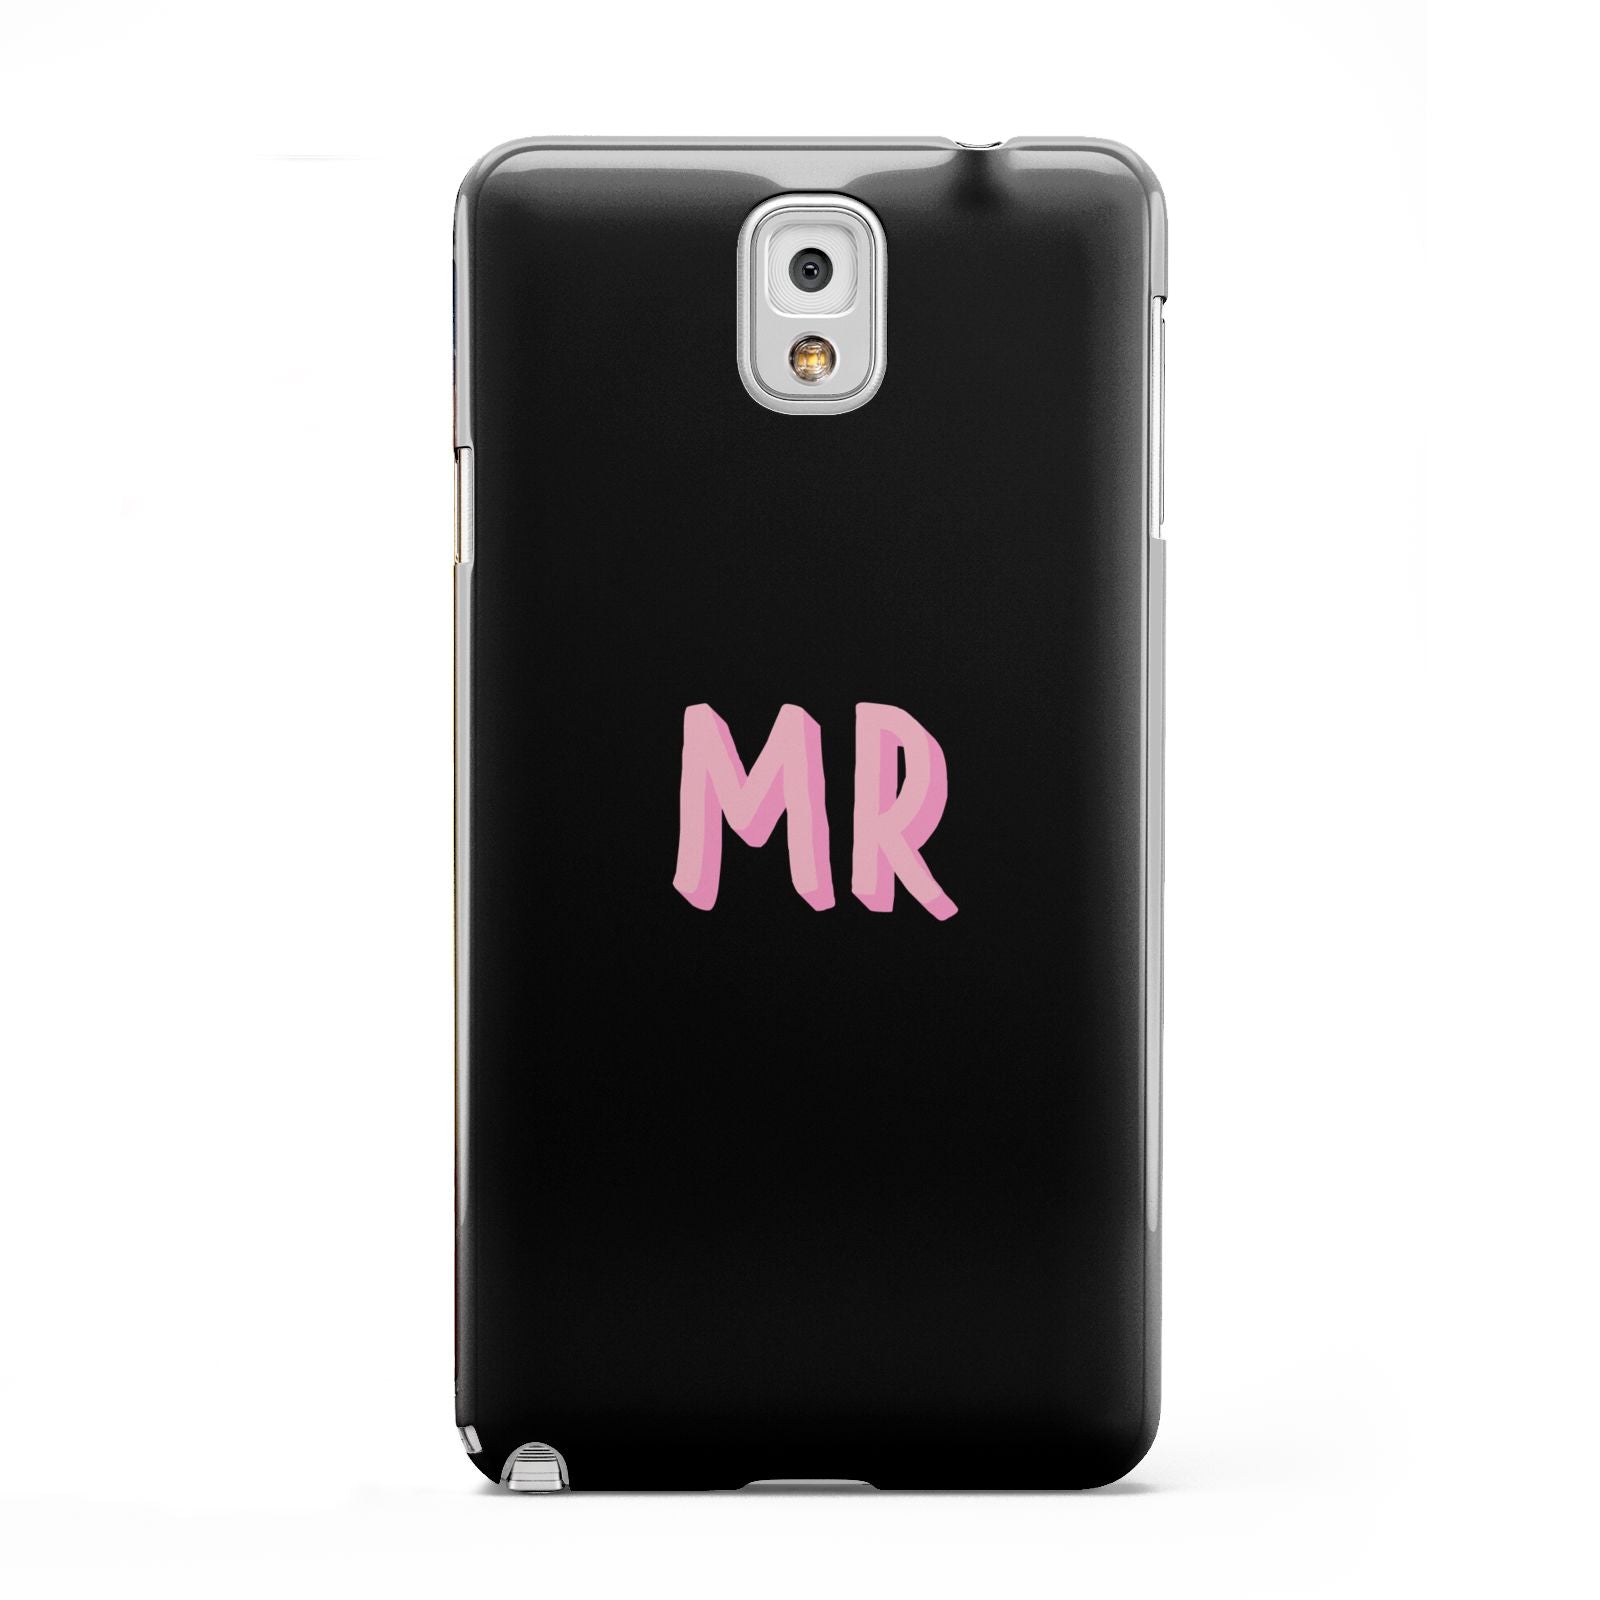 Mr Samsung Galaxy Note 3 Case